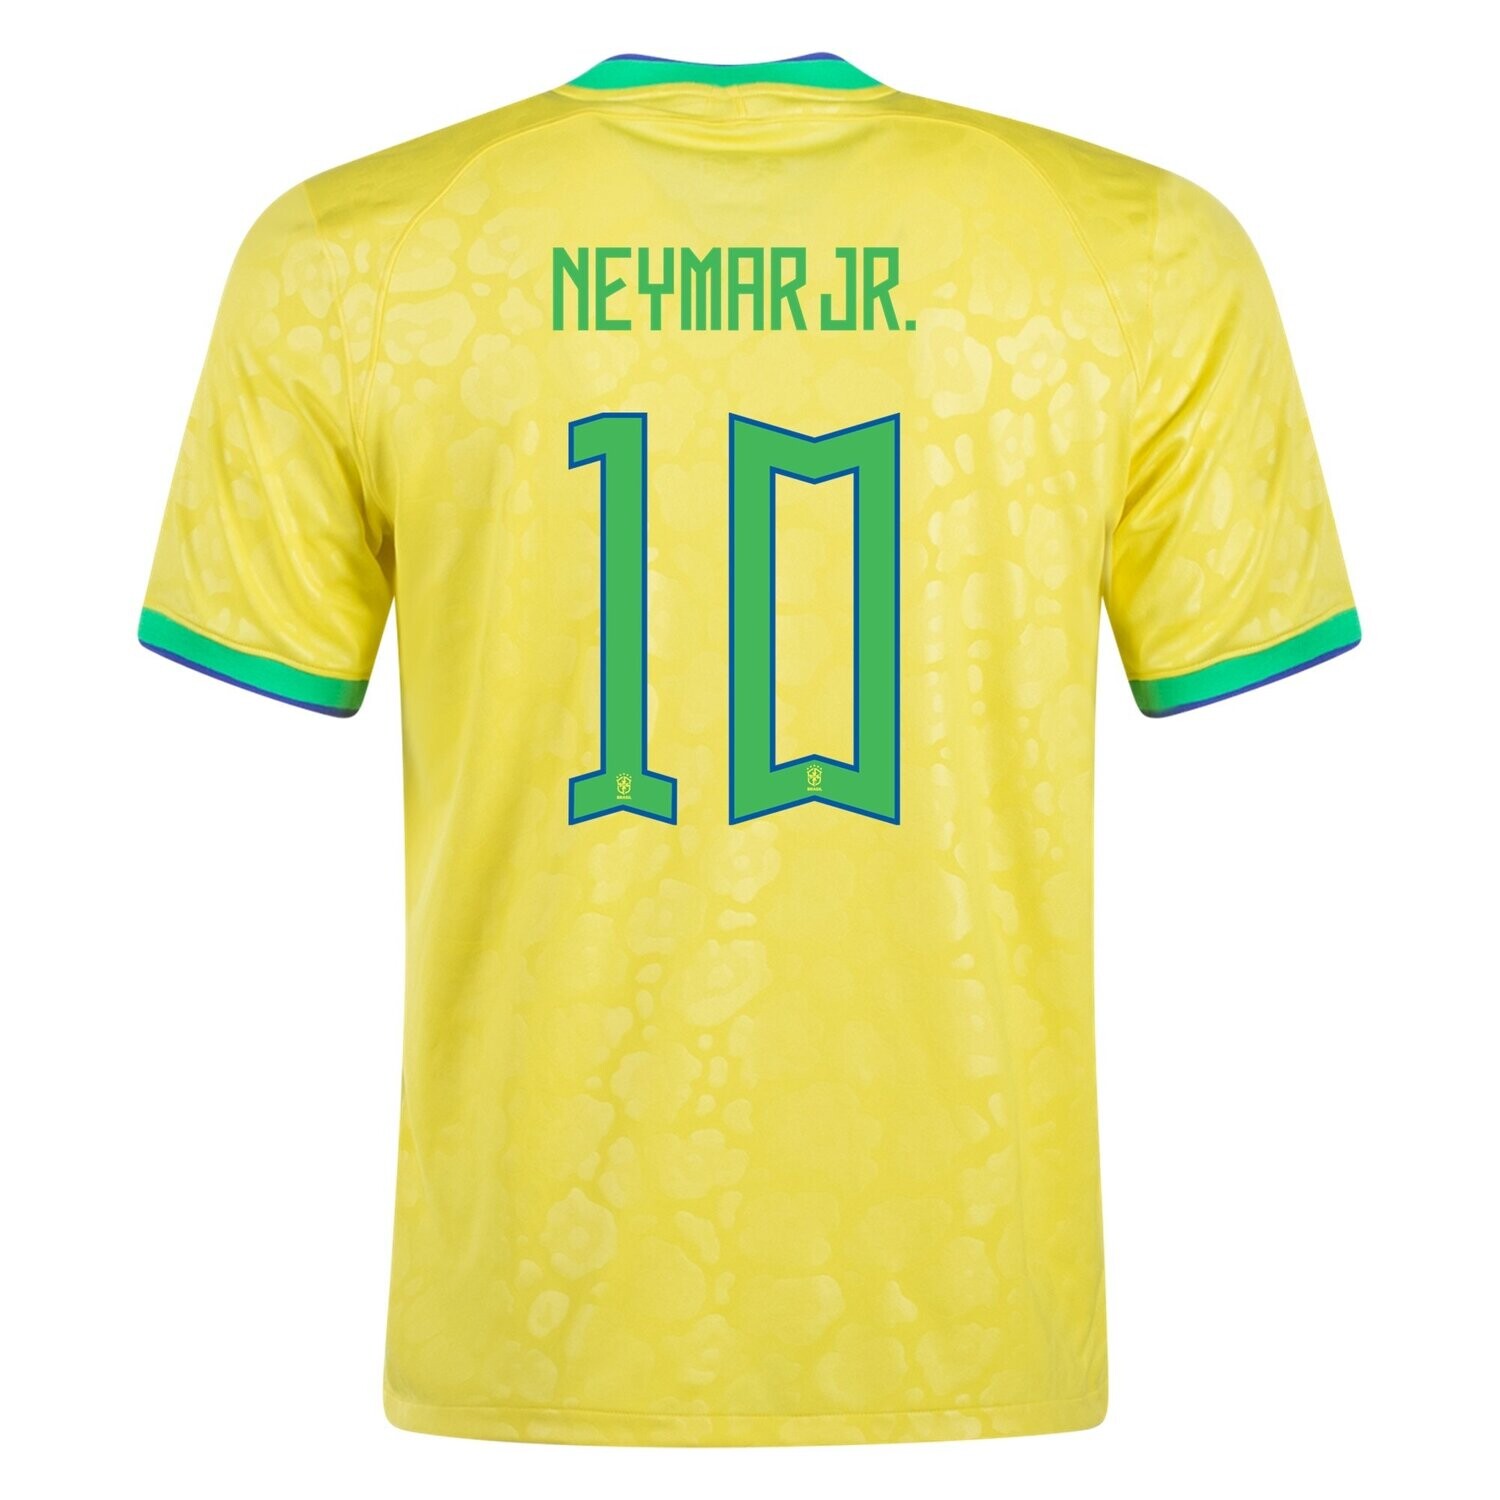 Neymar Jr. Brazil World Cup Home Soccer Jersey 2022